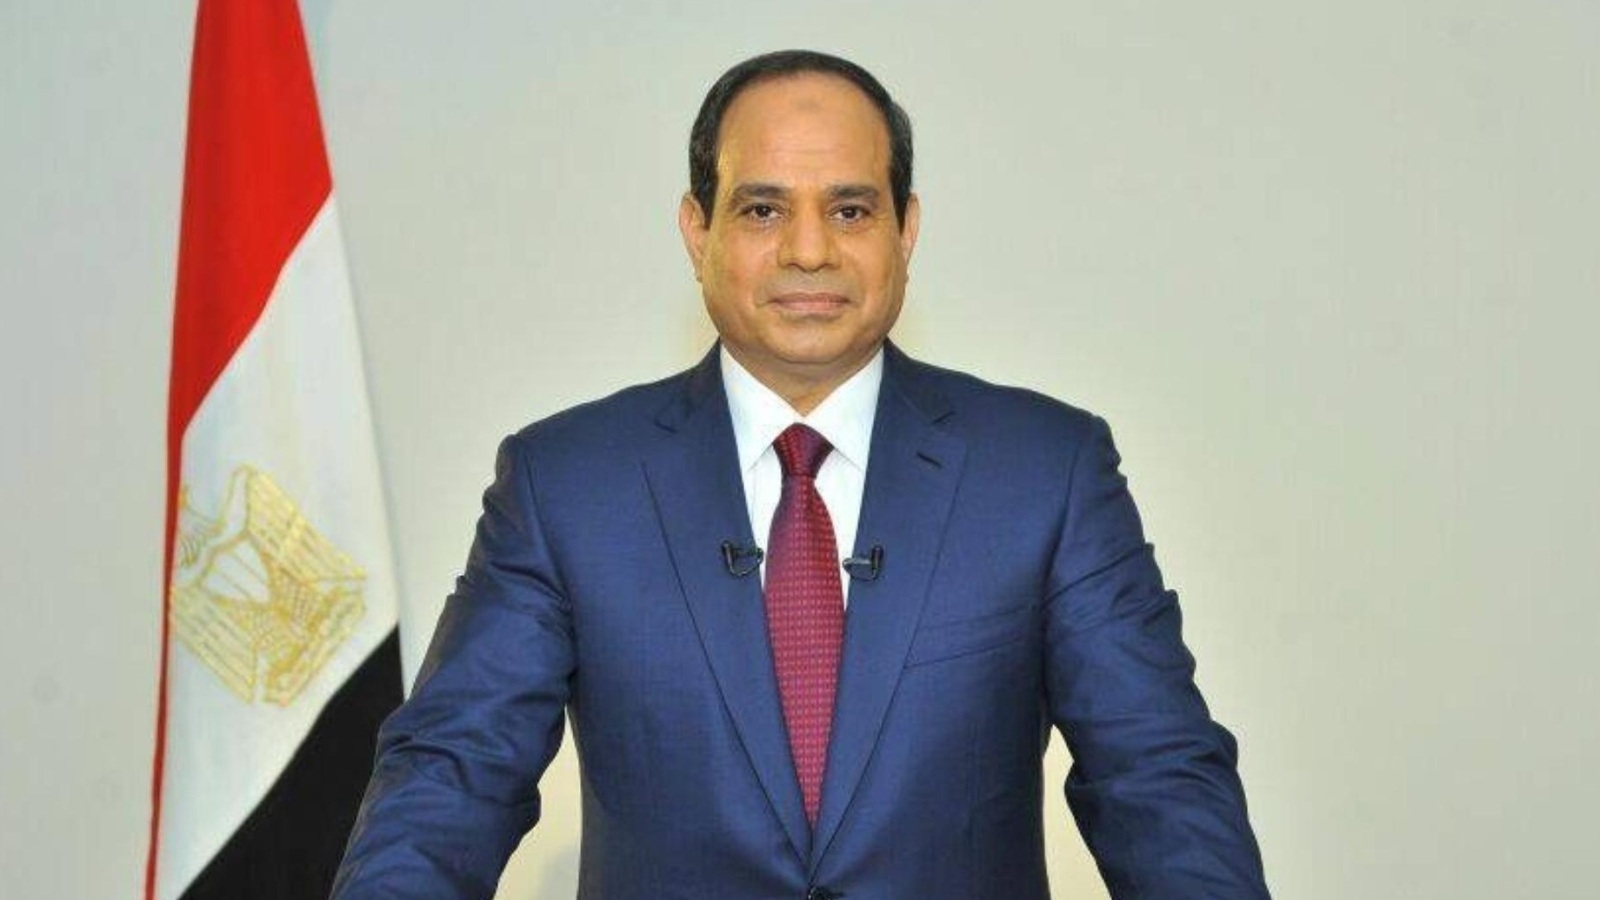 السيسي يصدر قرارا بمعاقبة قاض كبير وتخصيص أراض جديدة للجيش المصري